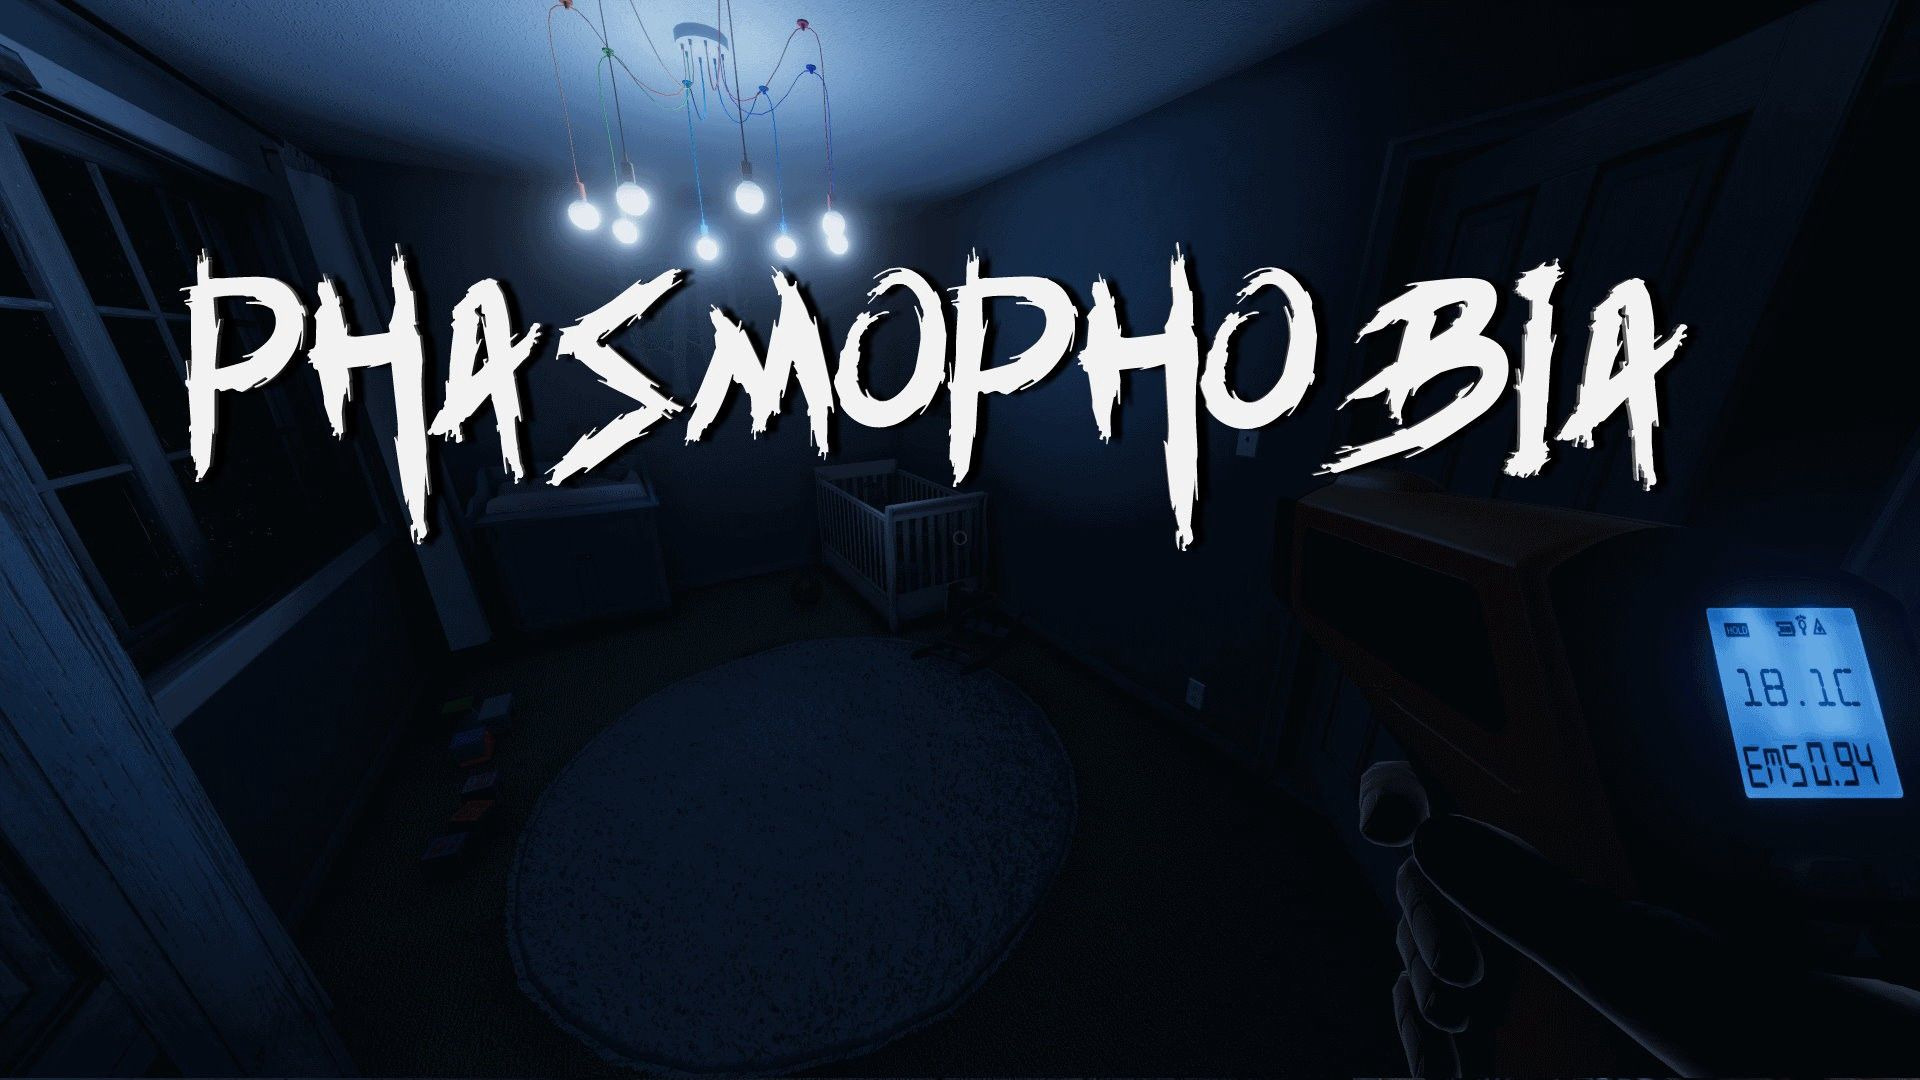 5 jogos de terror para quem gosta de Phasmophobia